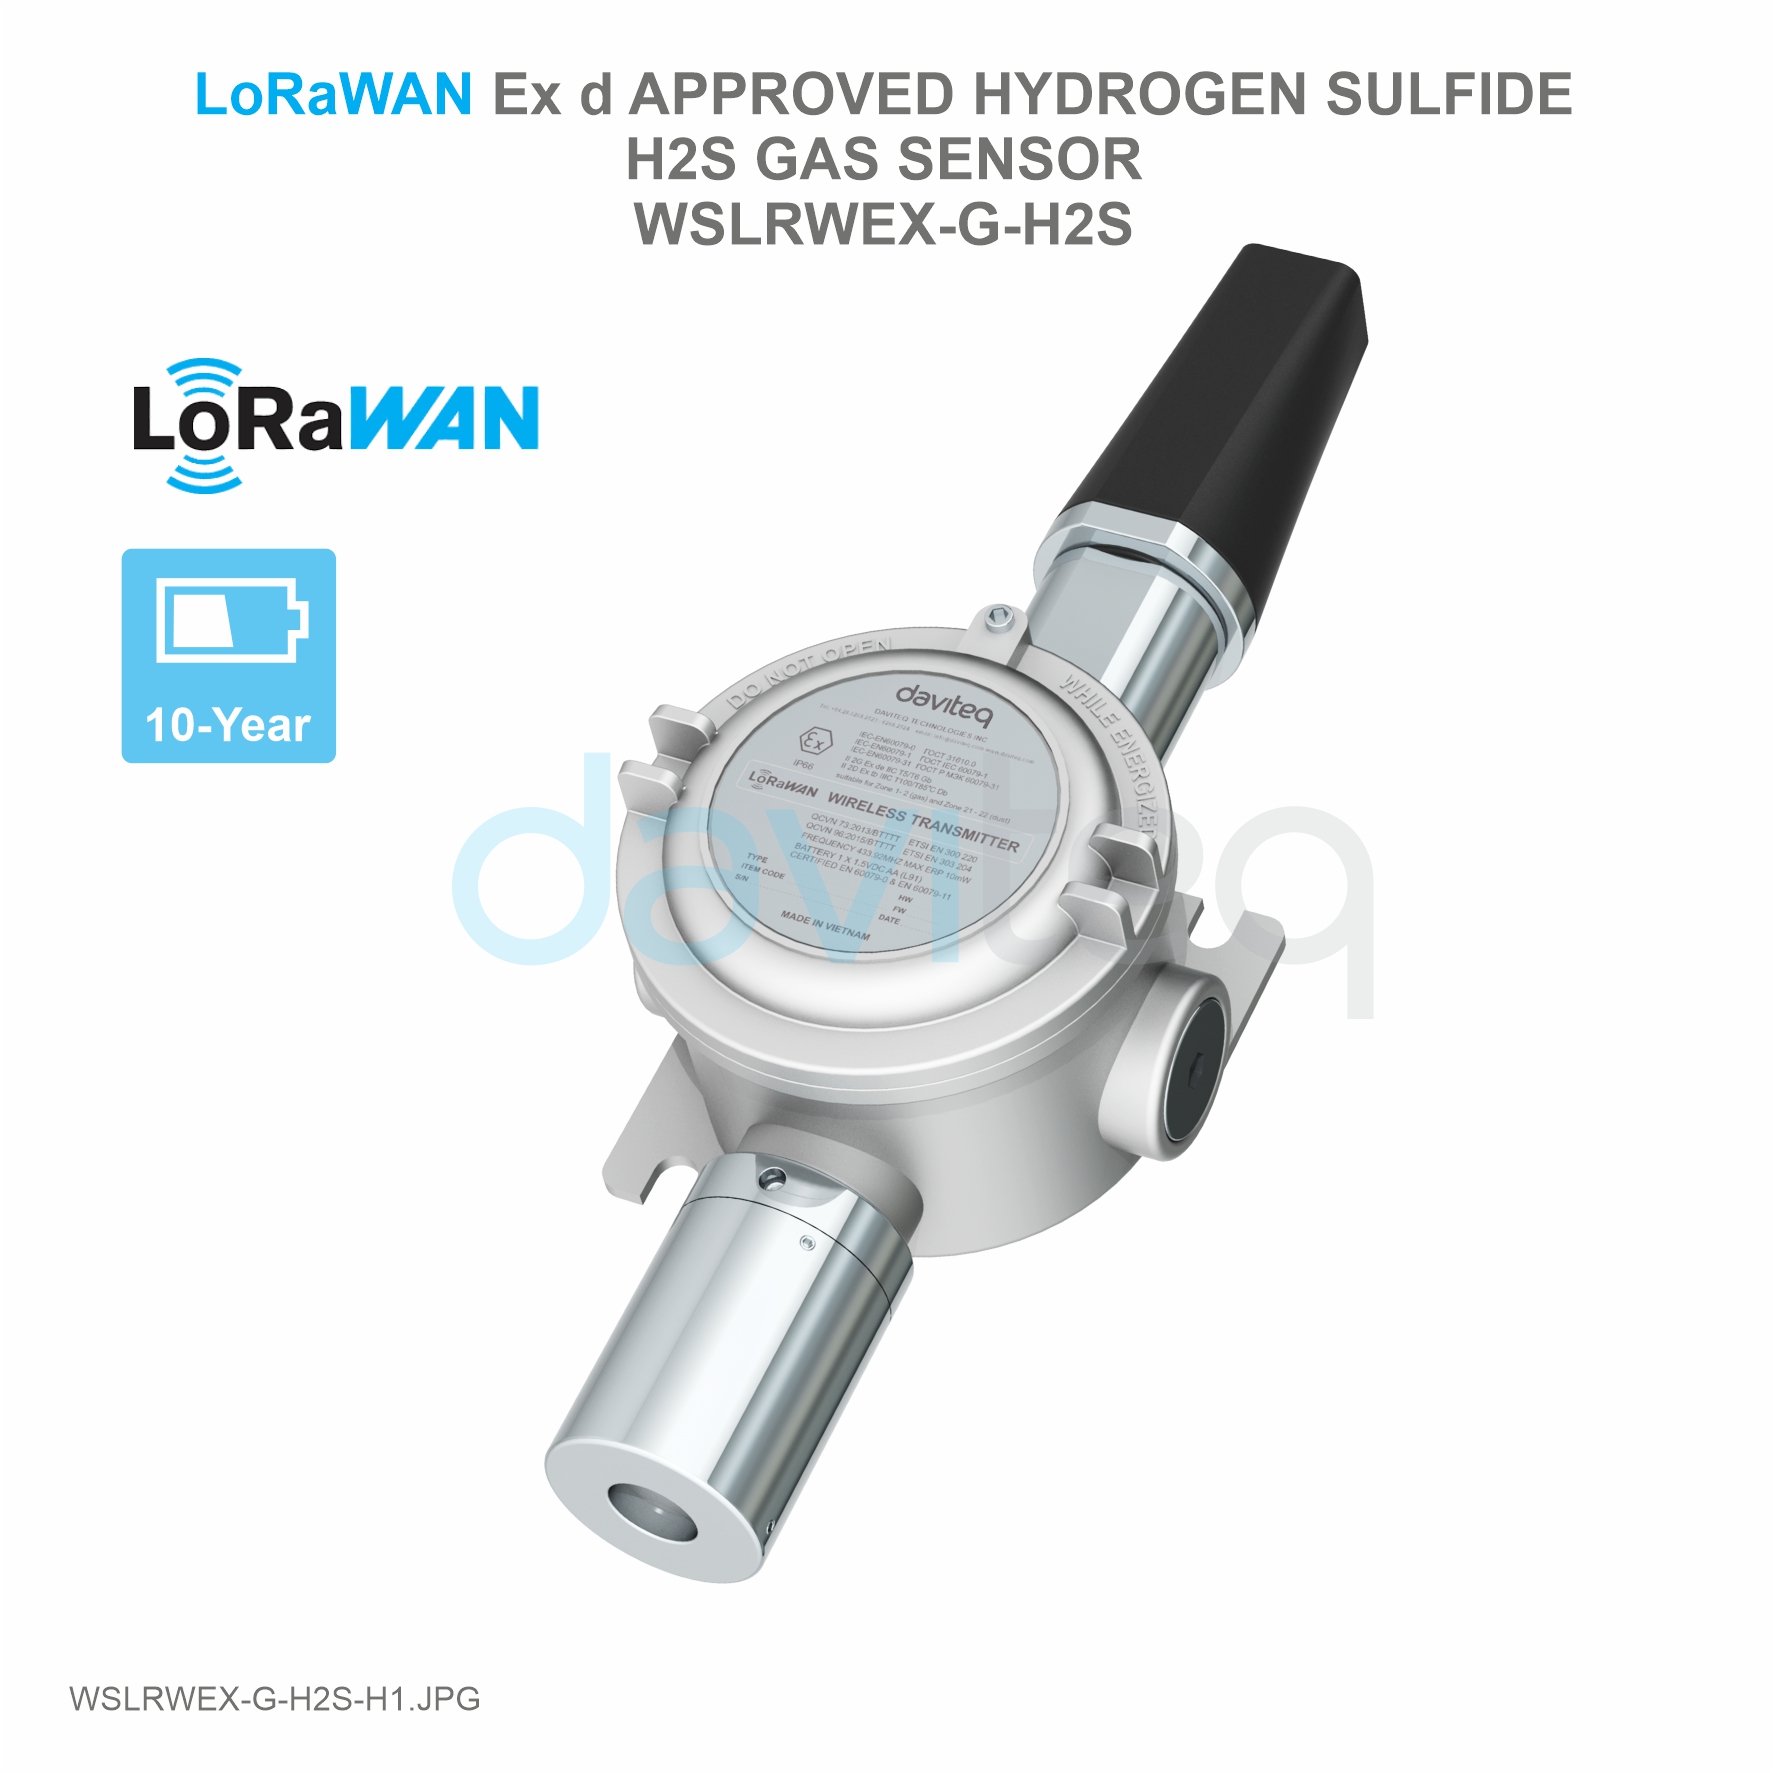 LoRaWAN Ex d approved Hydrogen Sulfide H2S Gas Sensor